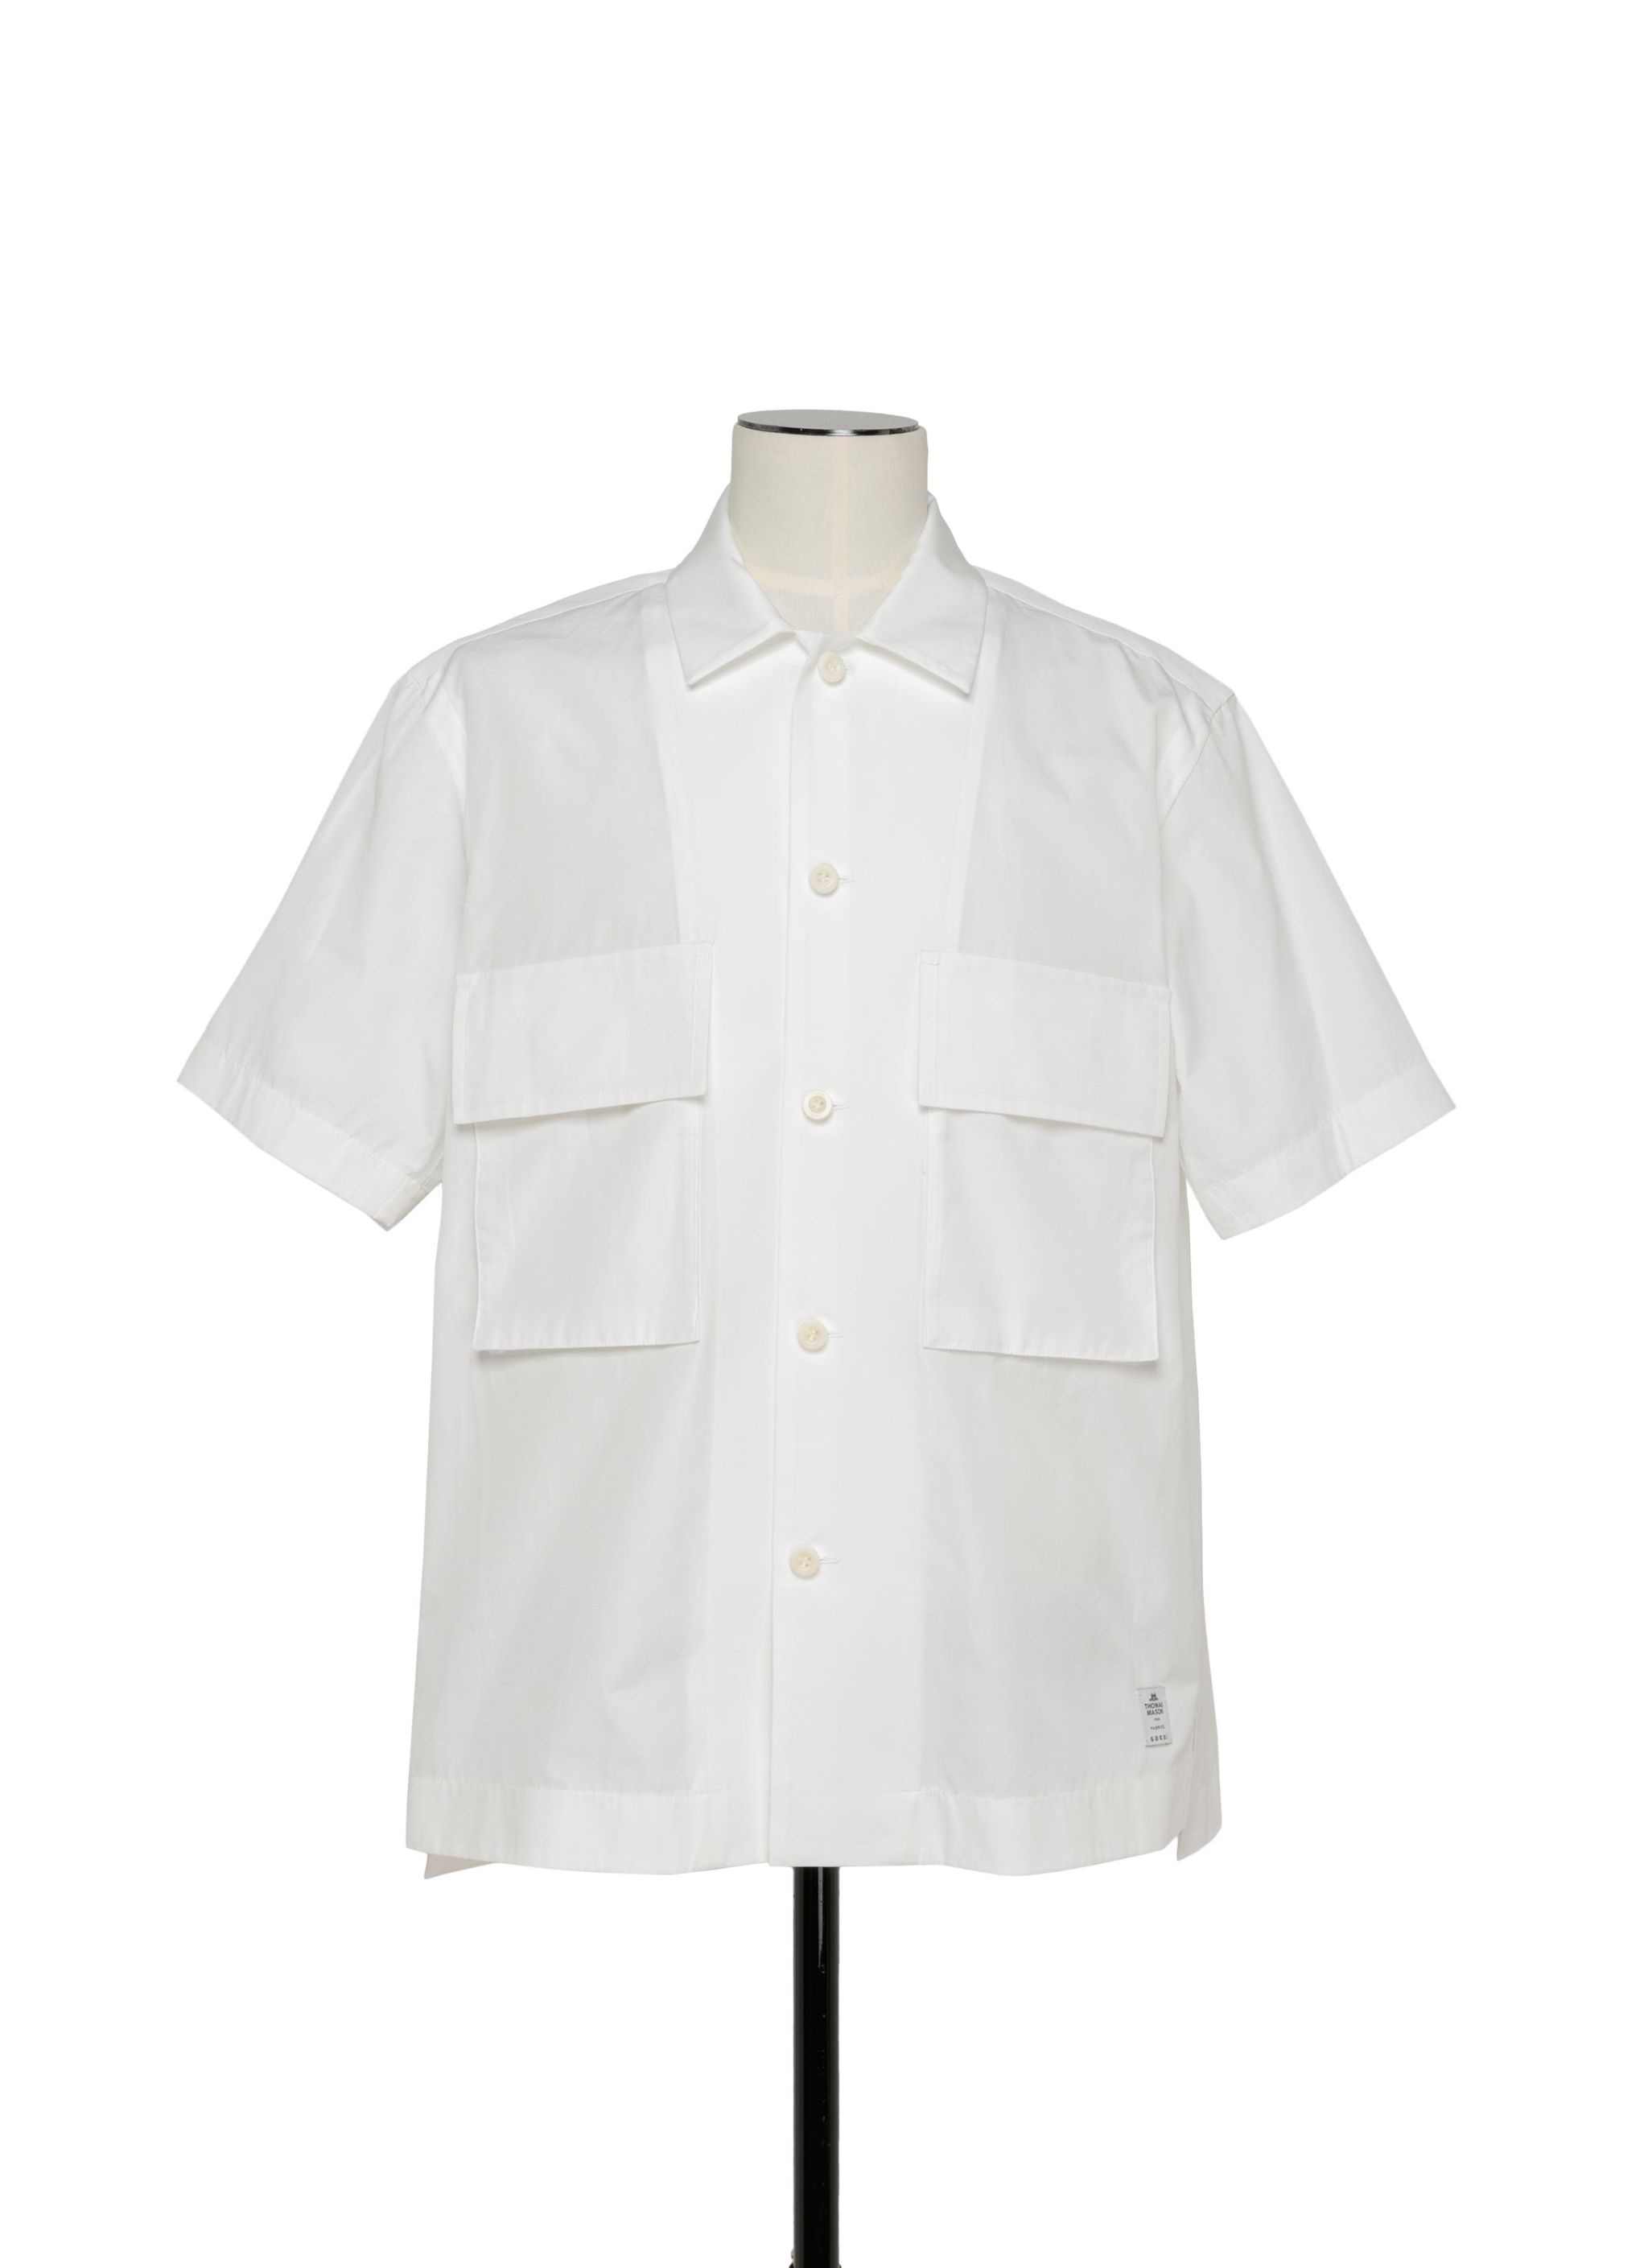 Thomas Mason Cotton Poplin Shirt - 1